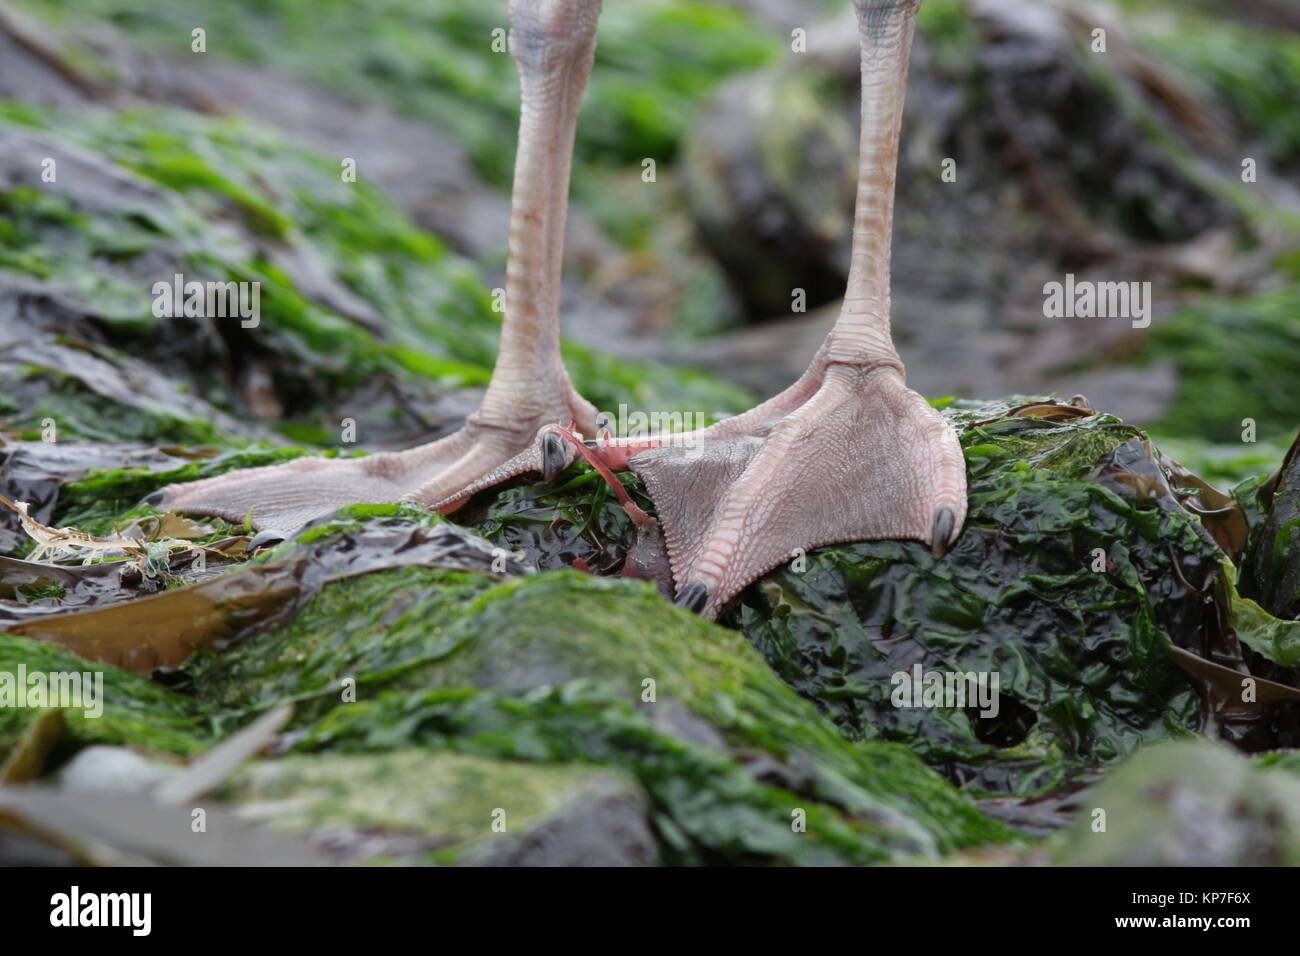 Goéland argenté Larus argentatus, pieds, les jeunes oiseaux, montrant la webbs entre les orteils sur le pied des goélands. Banque D'Images